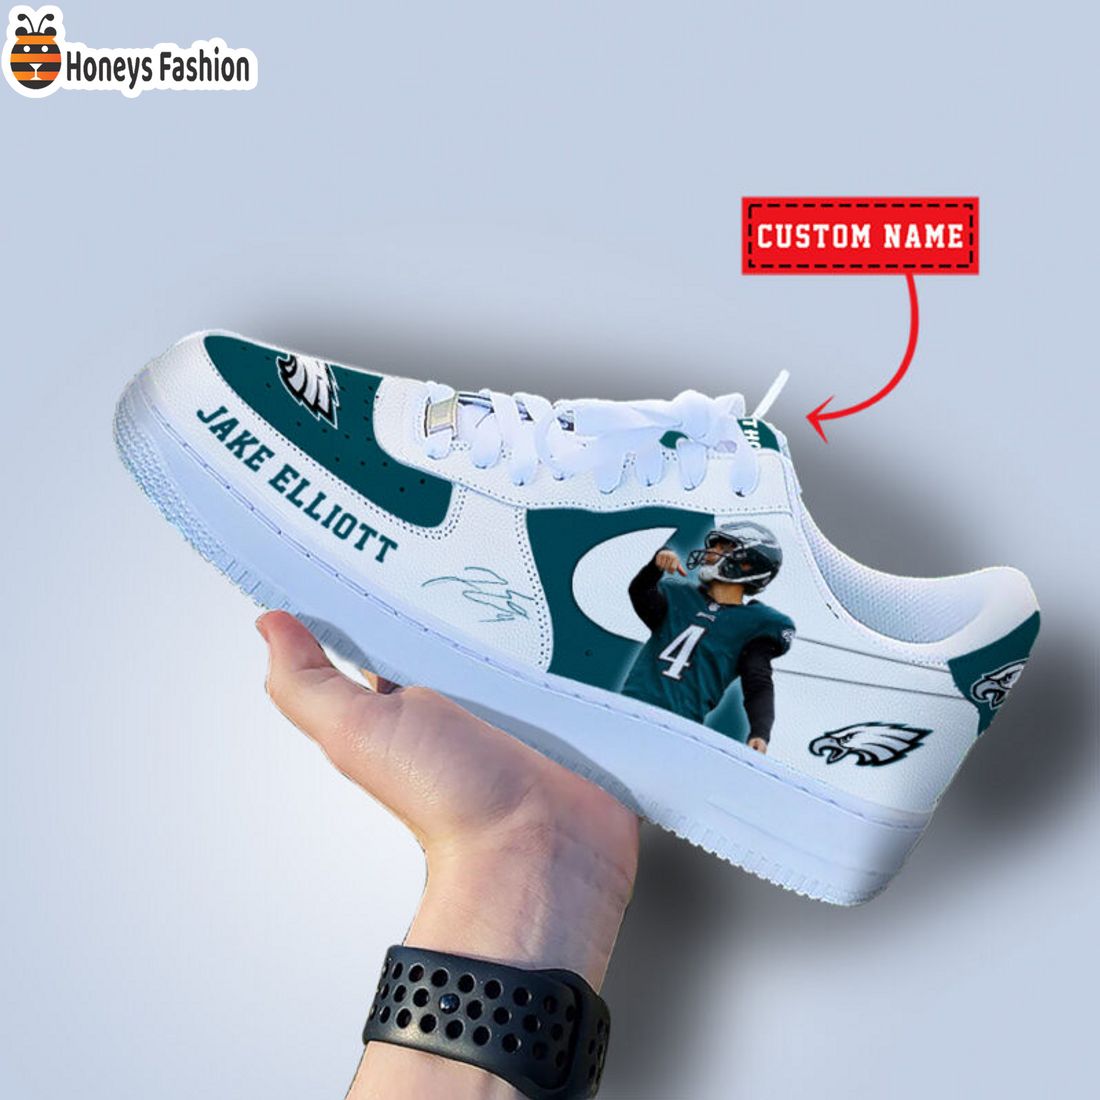 TOP SELLER Jake Elliott Philadelphia Eagles NFL Custom Name Nike Air Force Shoes